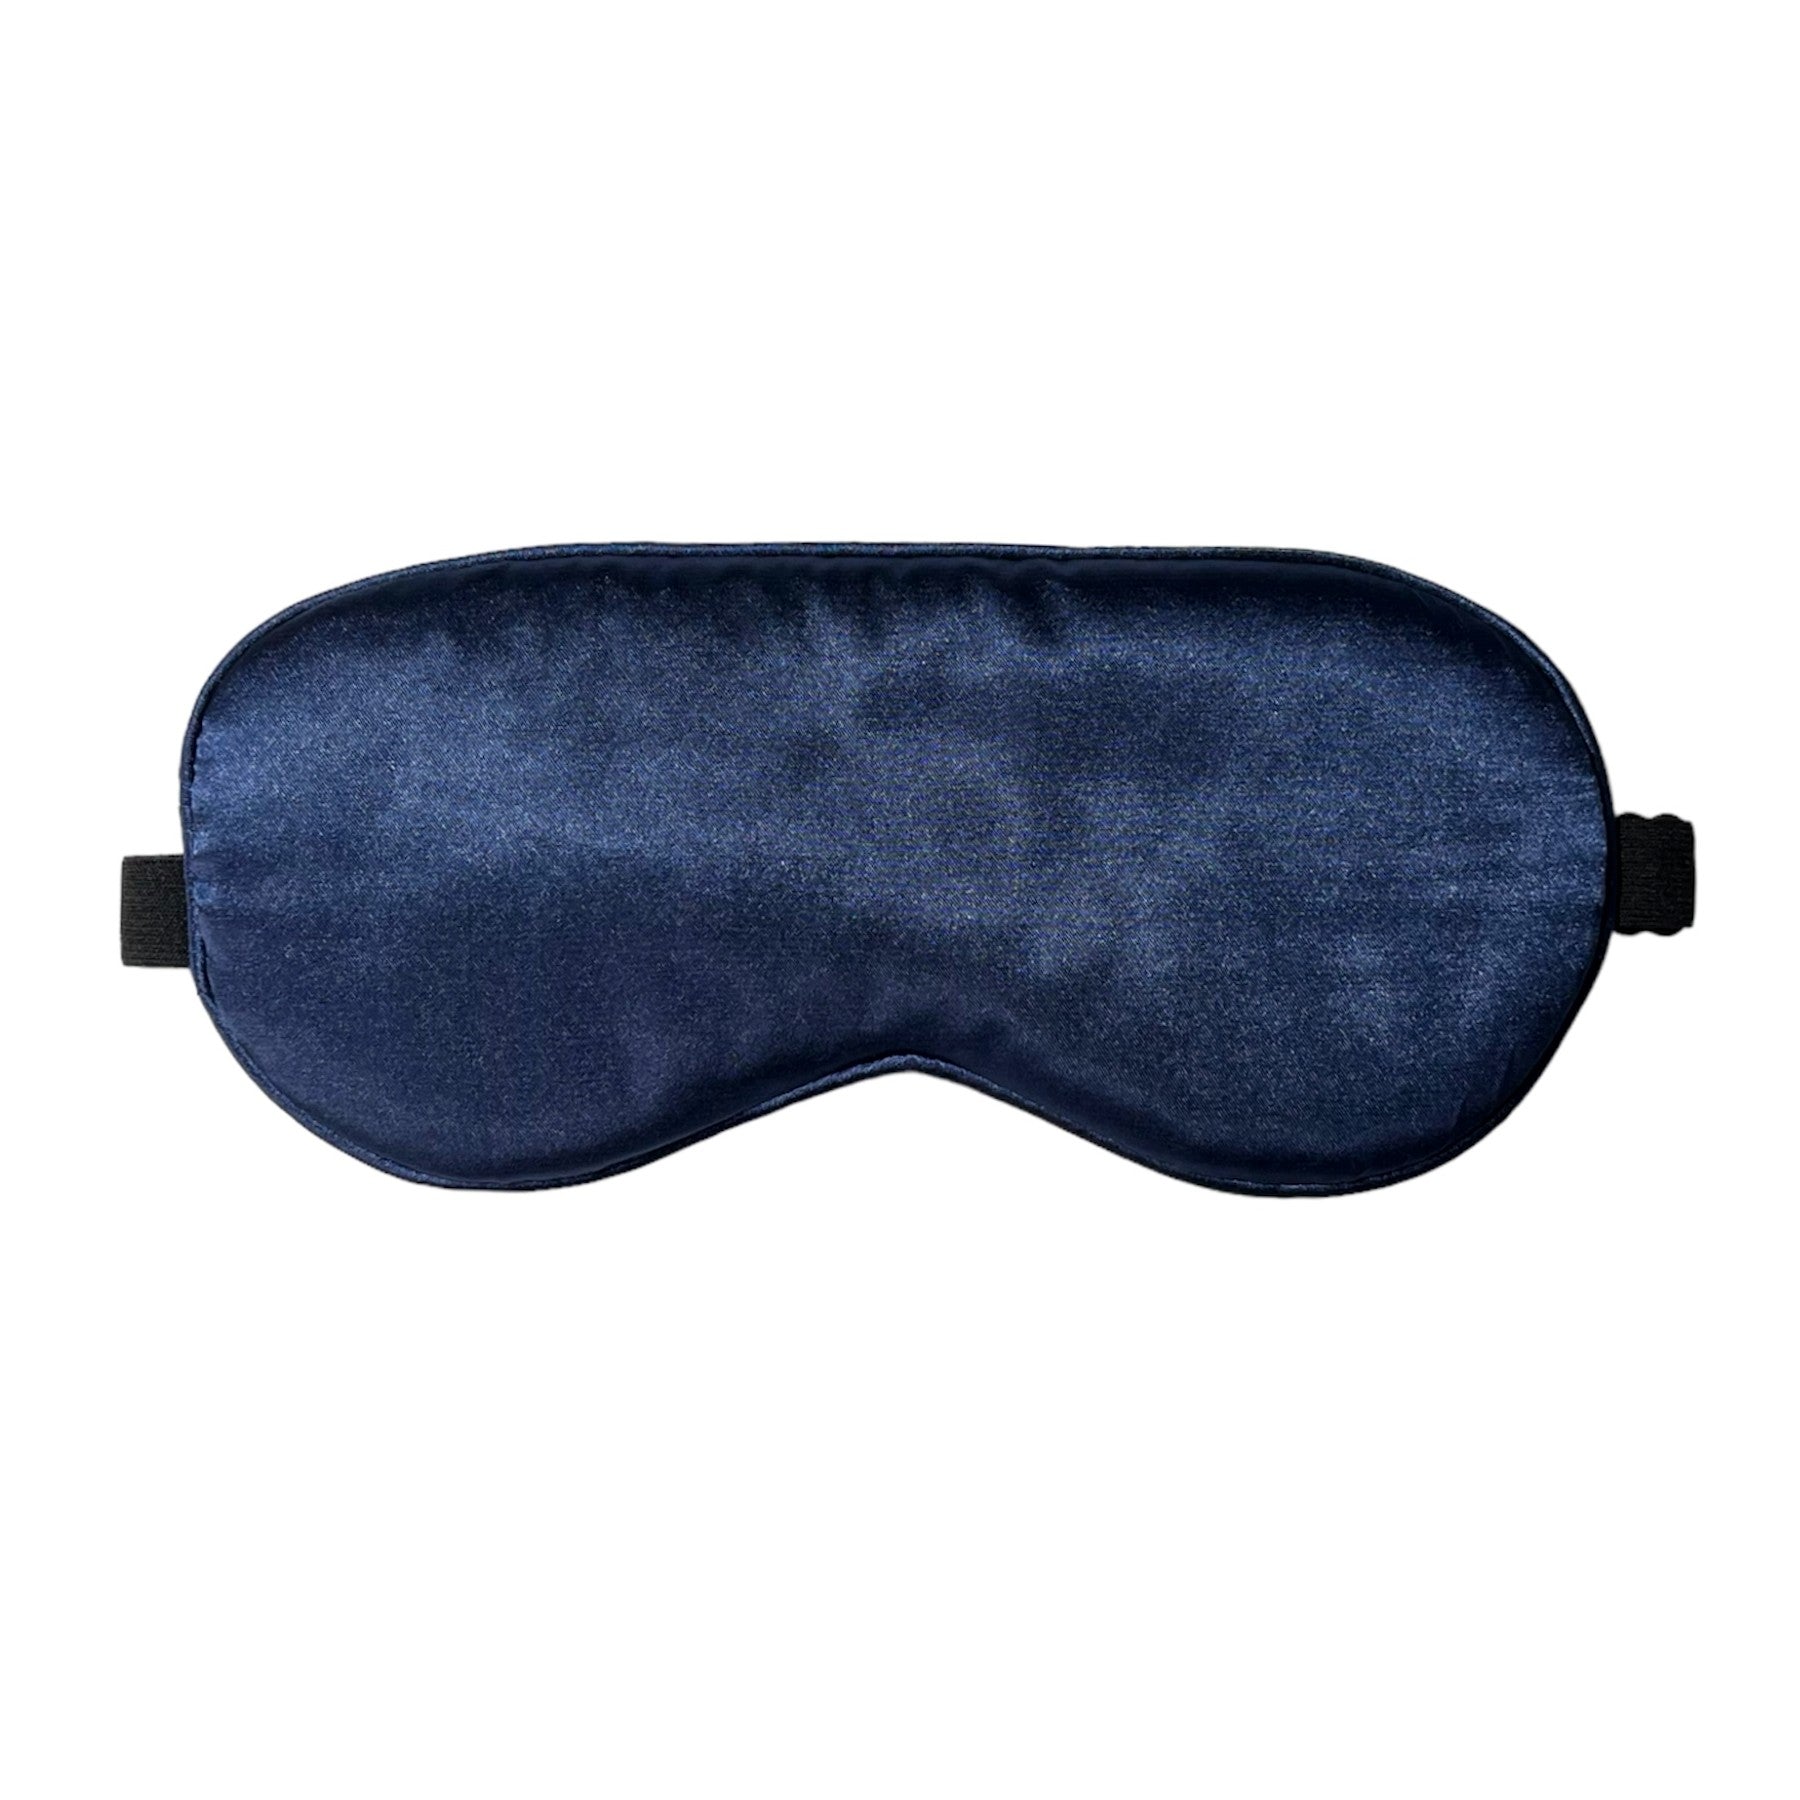 Silk Sleep Eye Mask With Wide Elastic Band